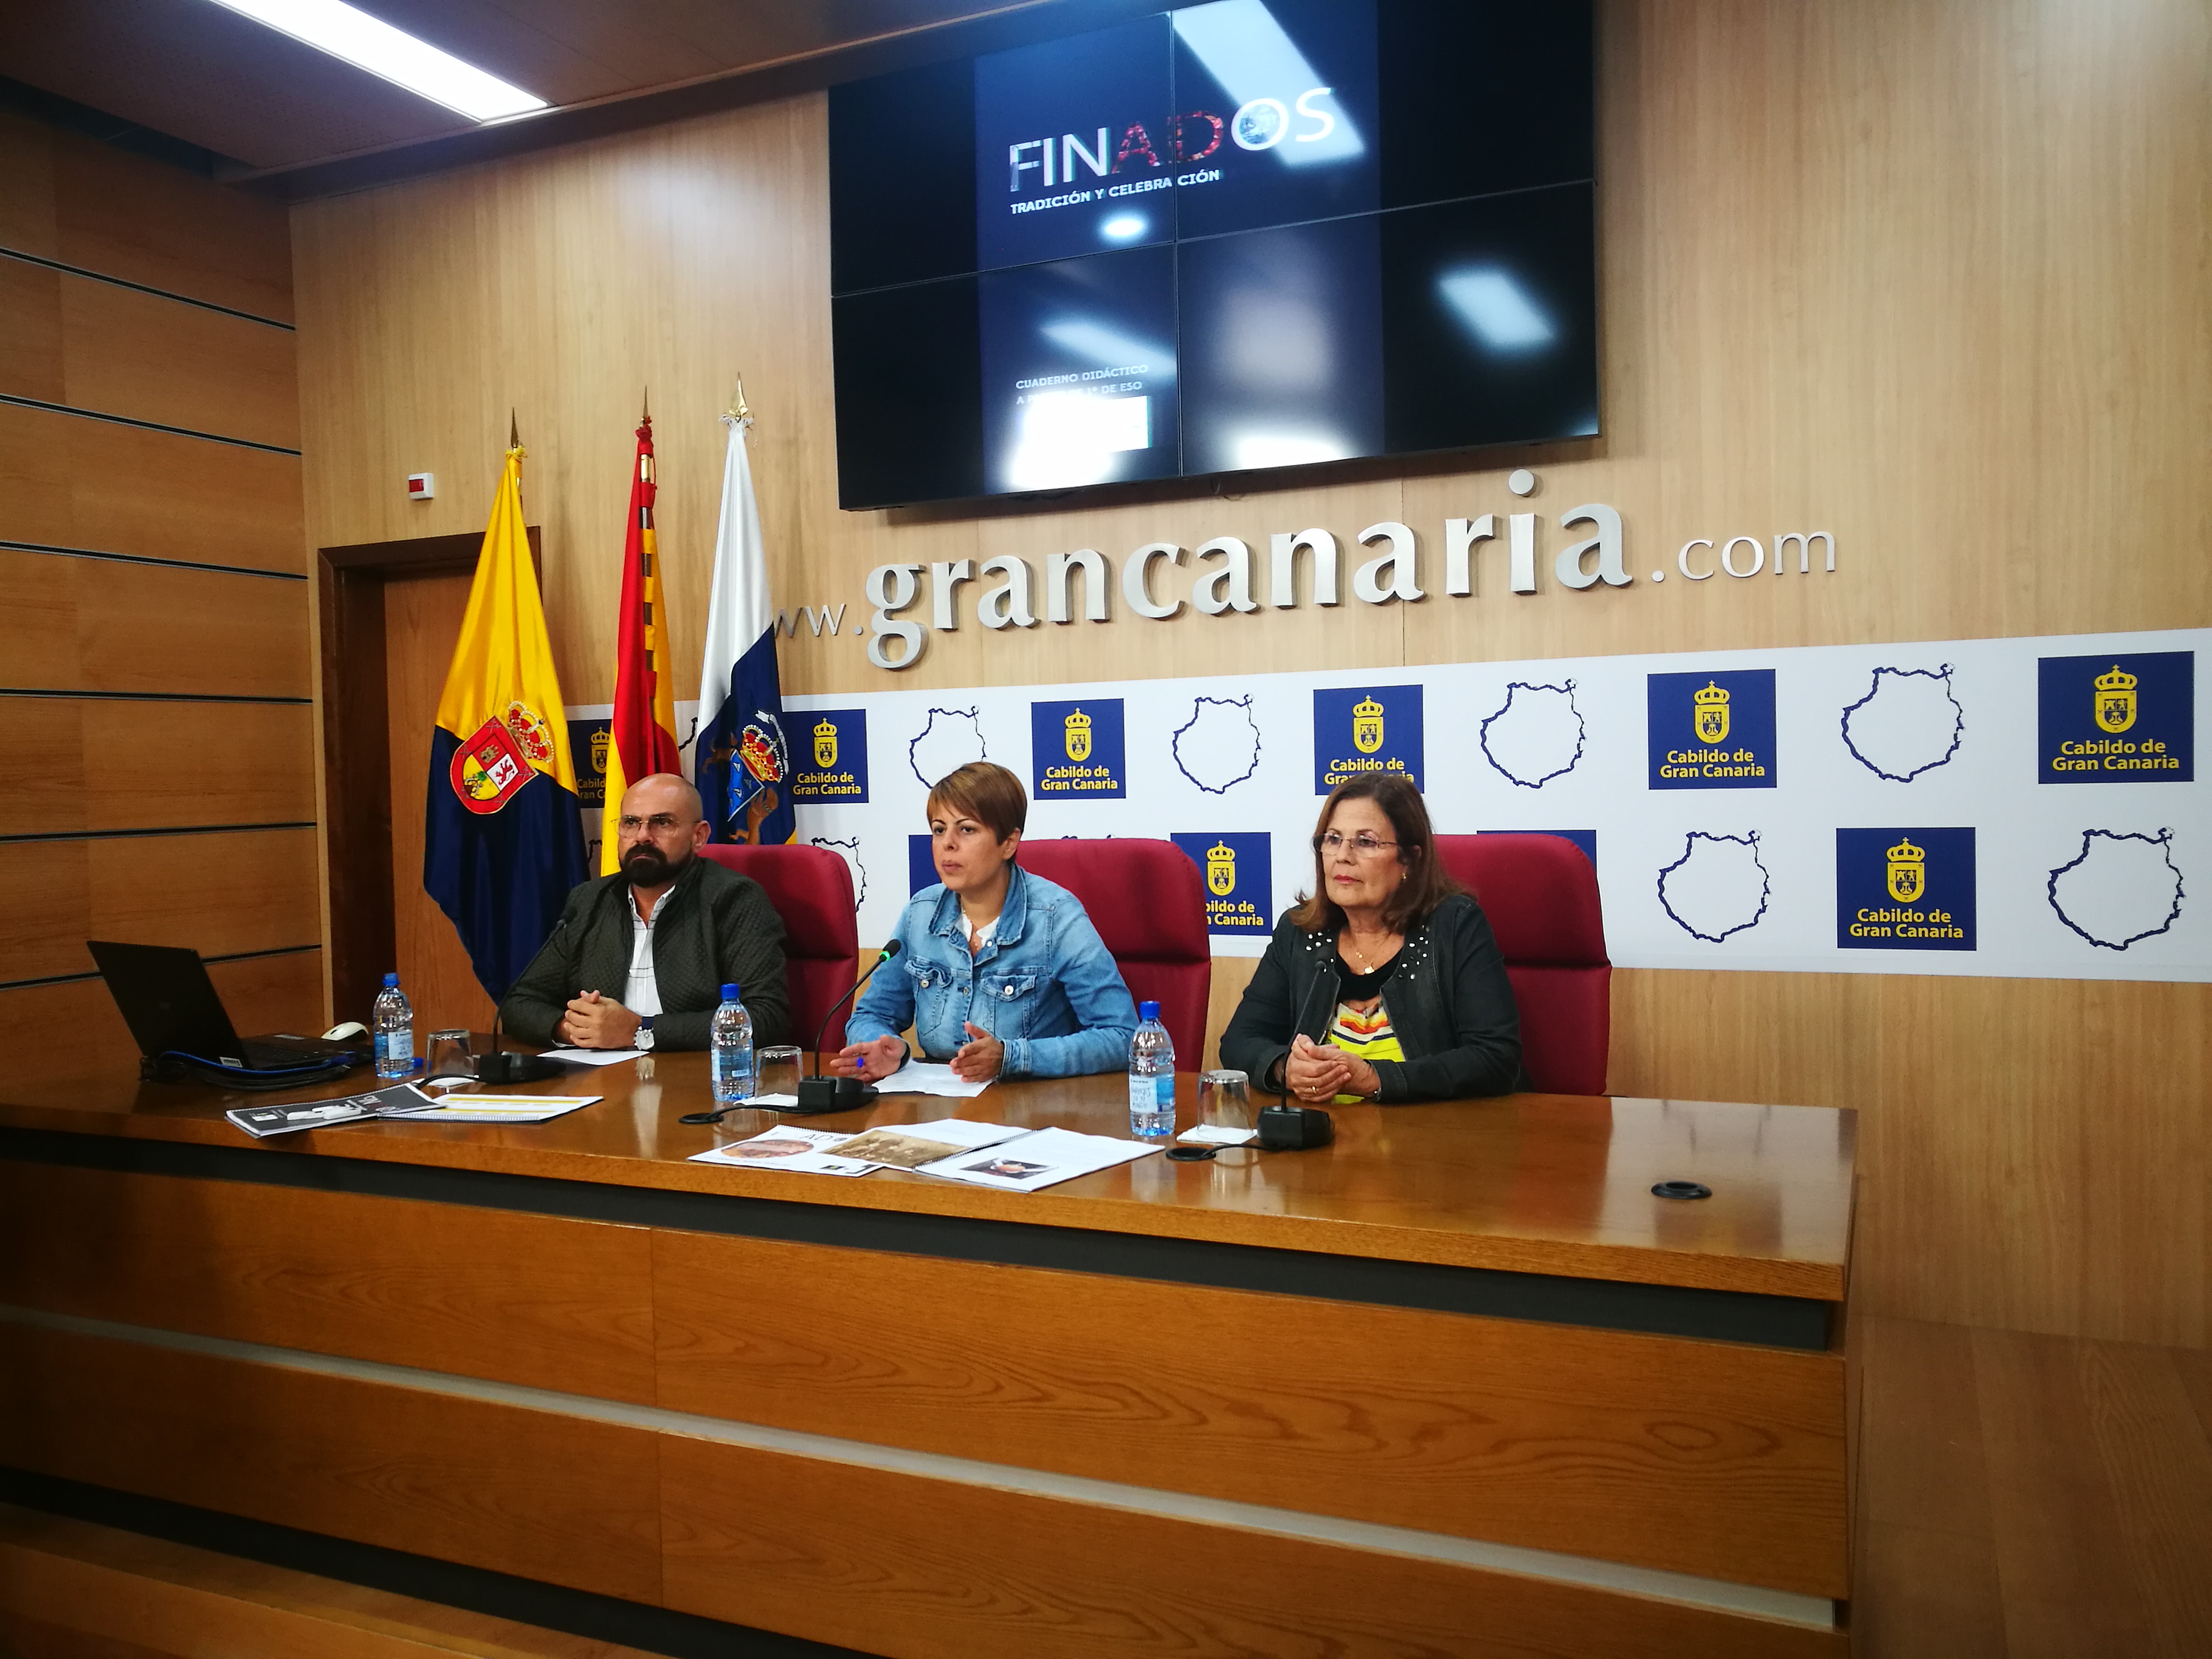 El Cabildo invita a los jóvenes a honrar a sus difuntos con un álbum genealógico por el Día de los Finados en Gran Canaria